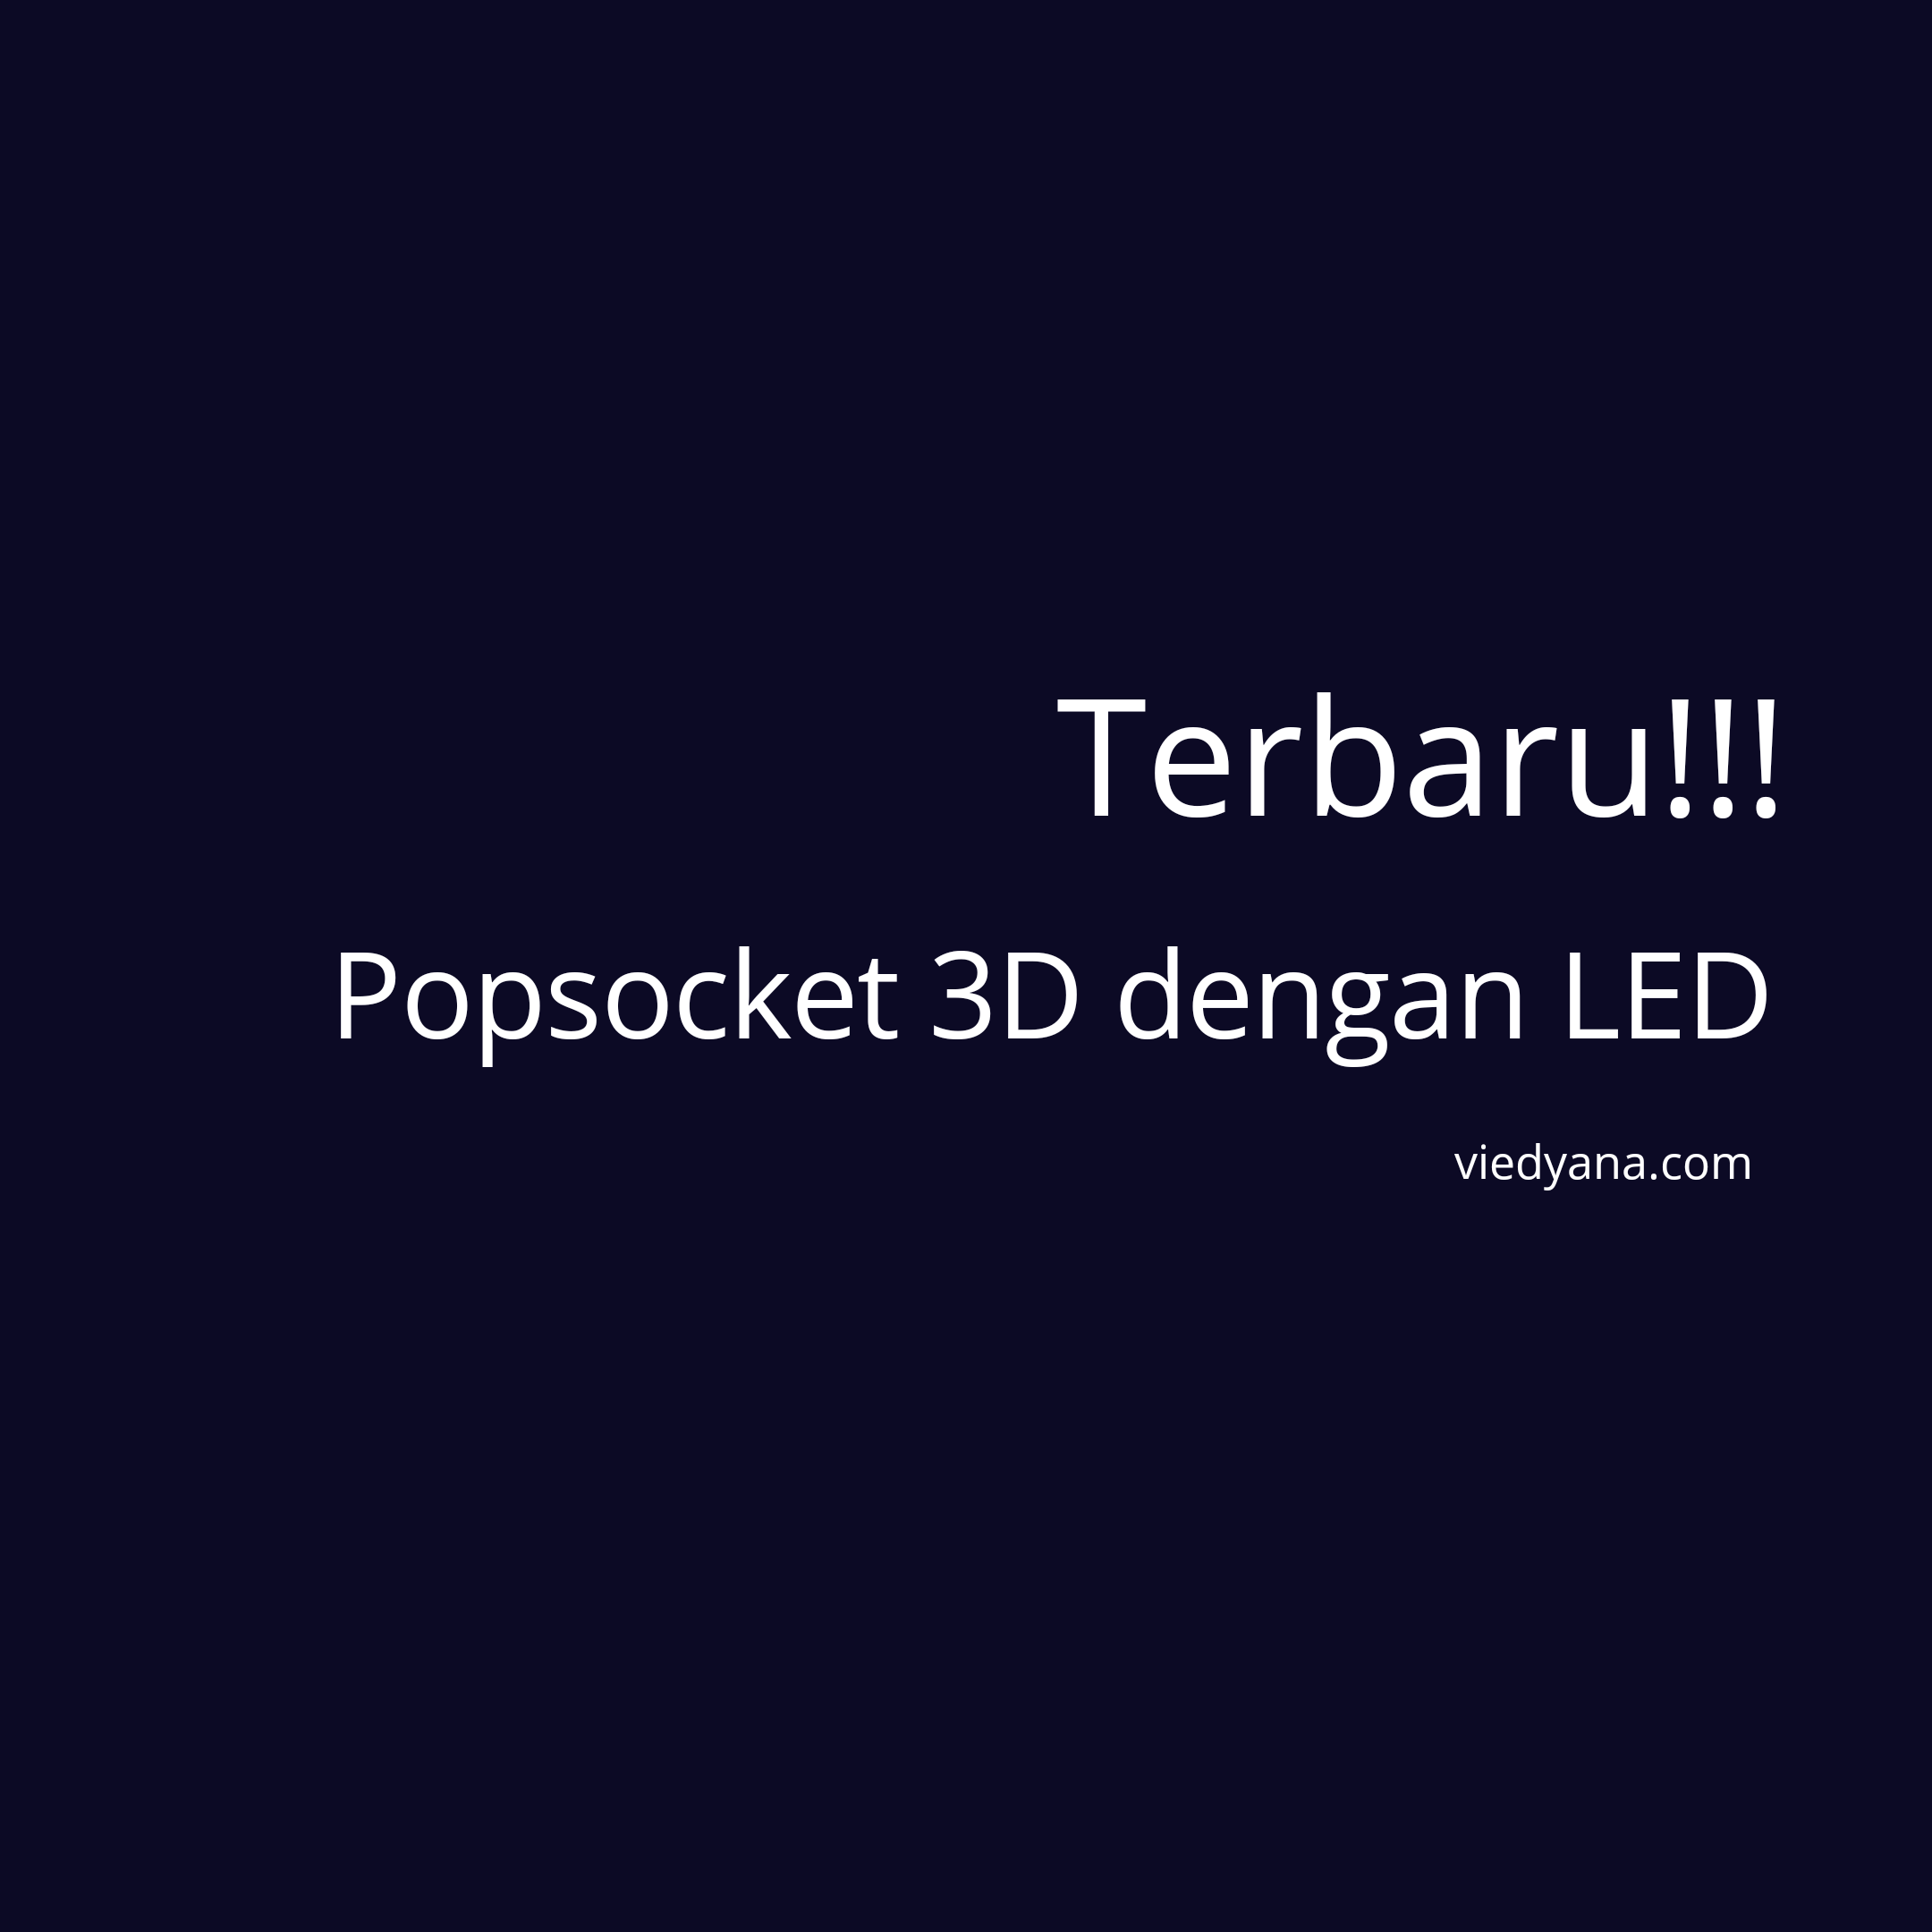 Terbaru!!! Popsocket 3D dengan LED